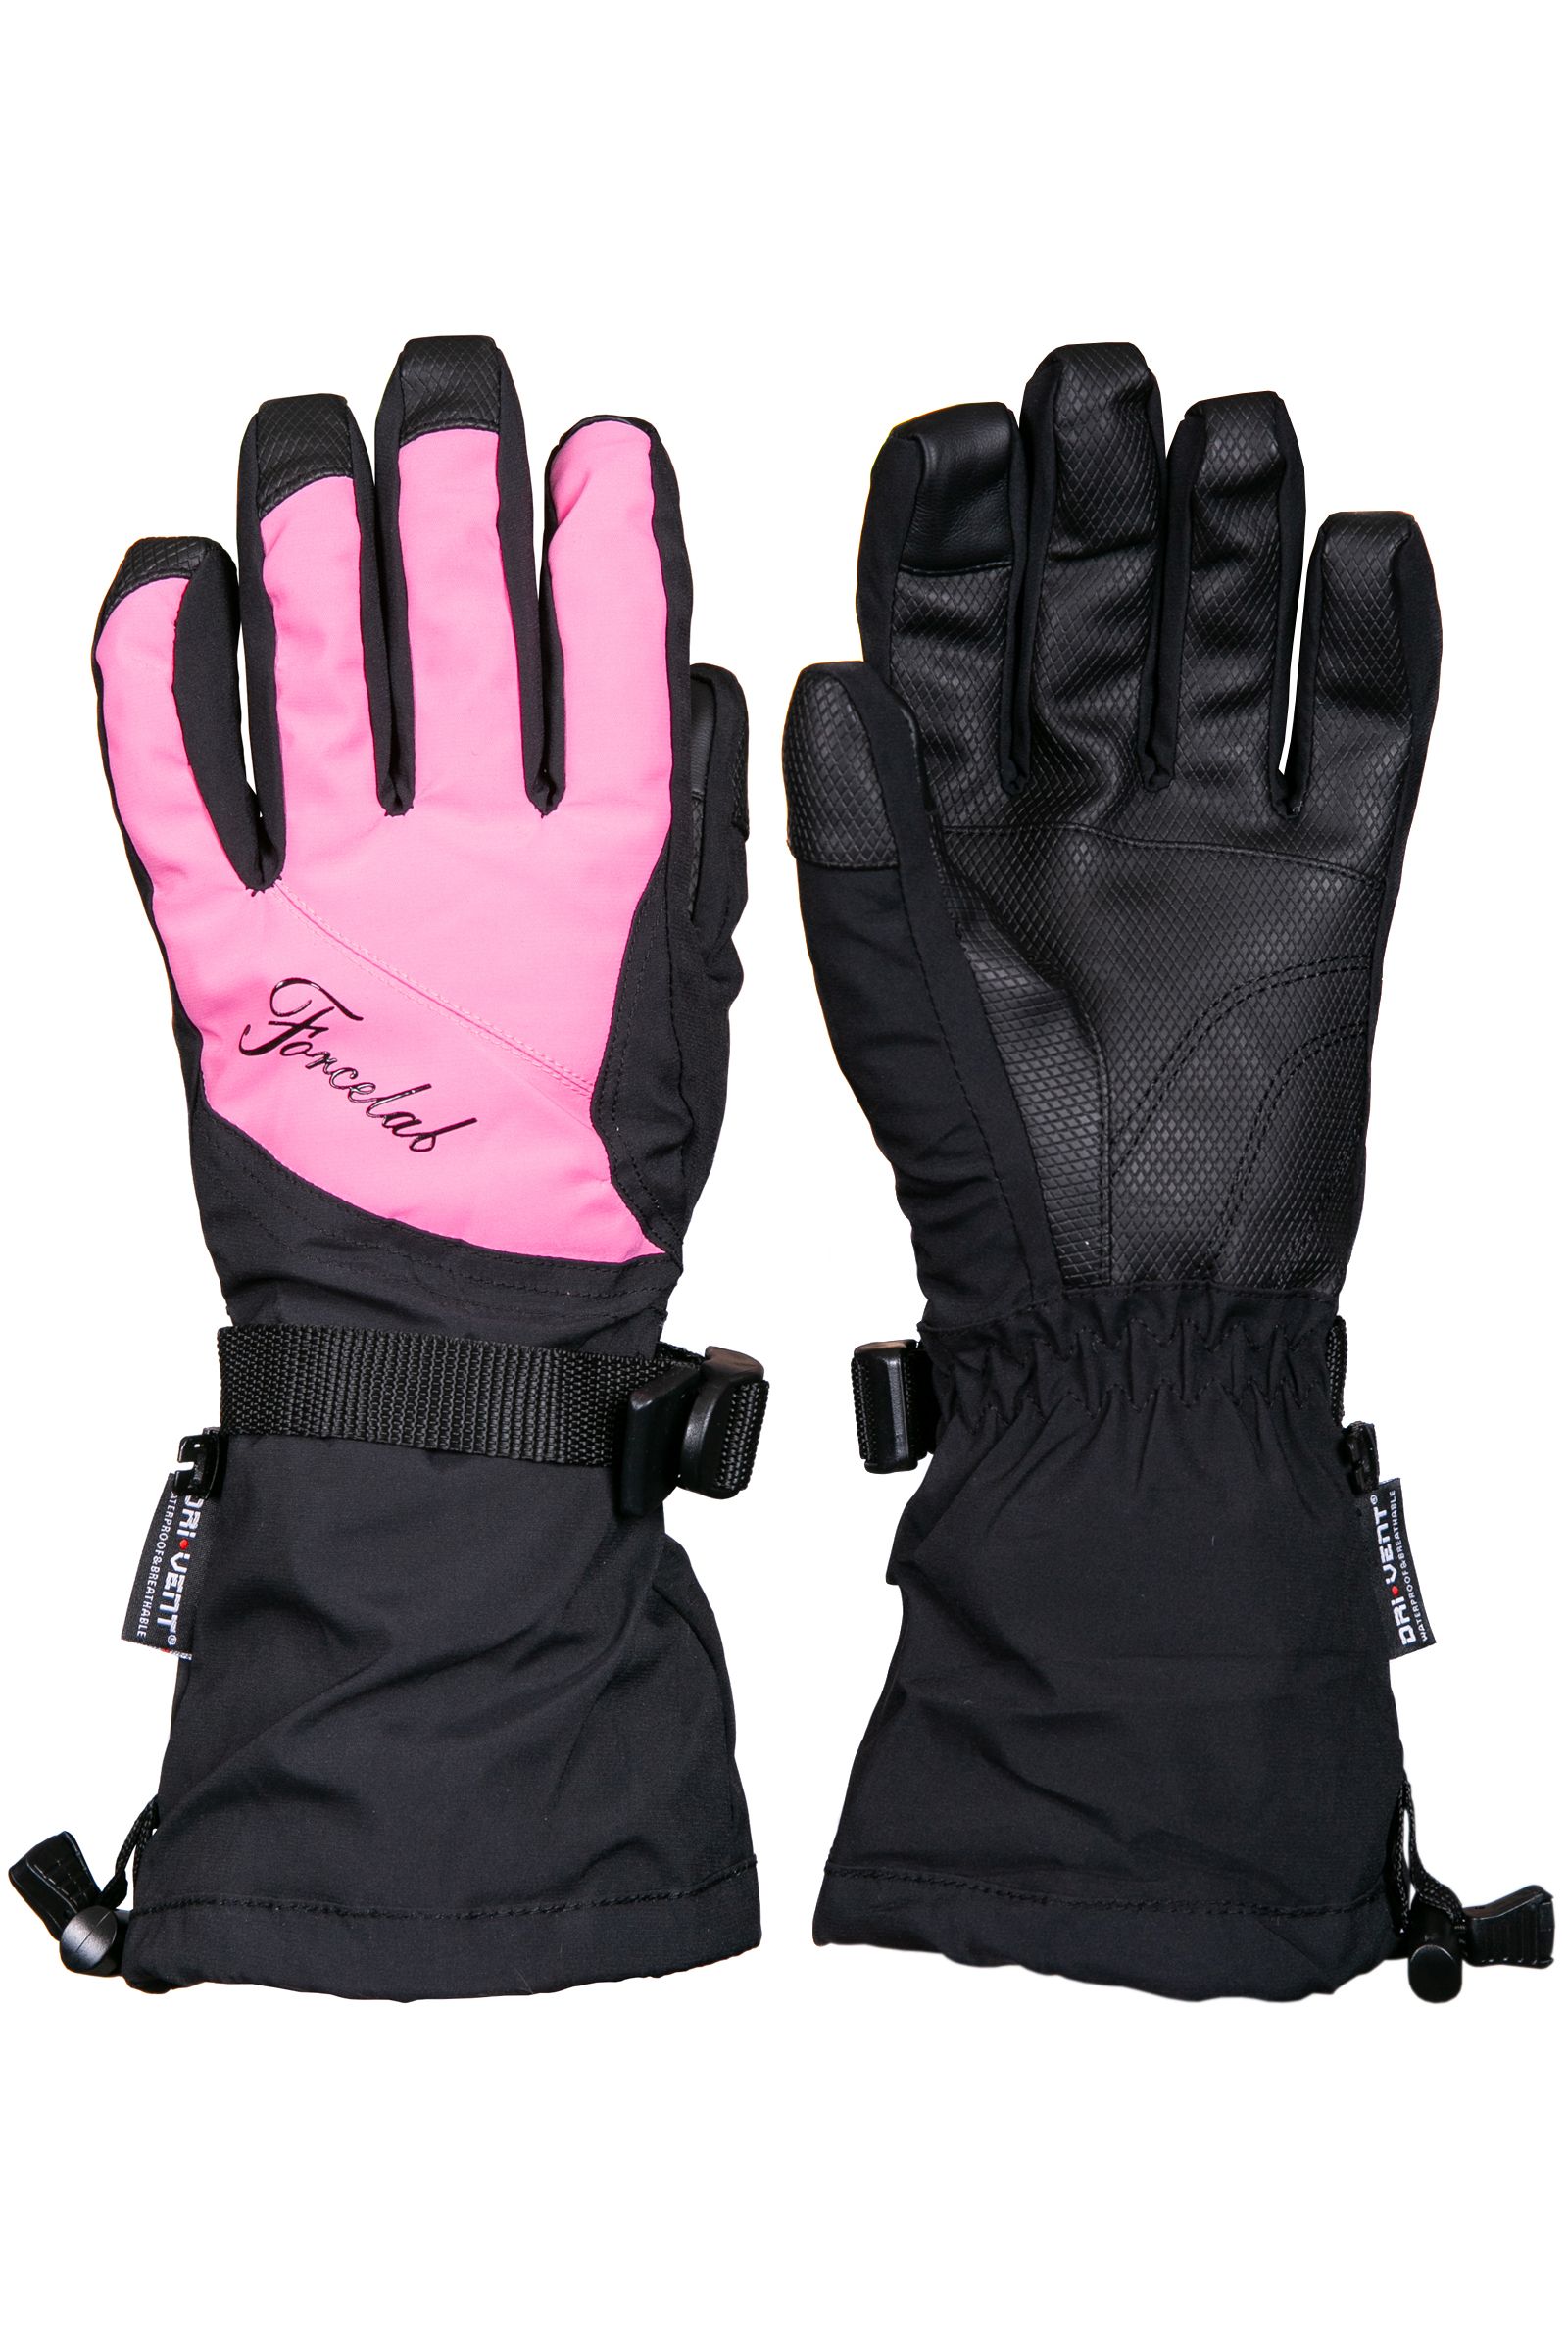 Перчатки женские горнолыжные Forcelab706640 темно-розовый р-р 8